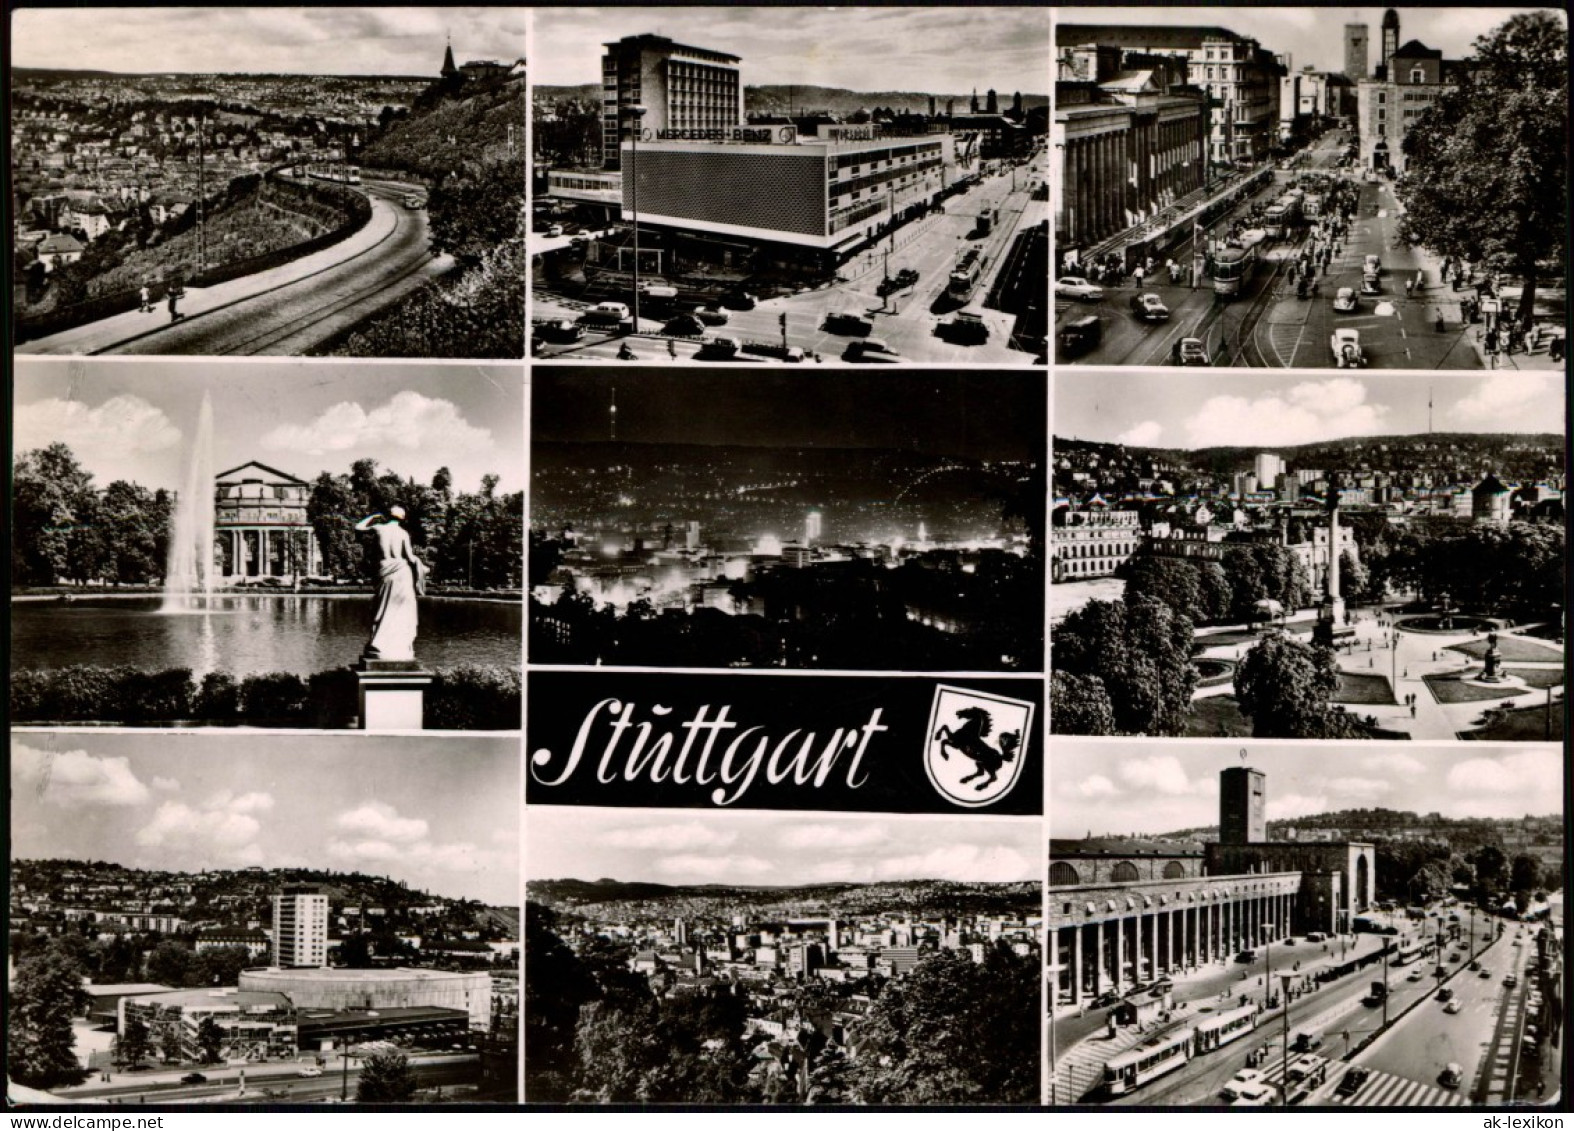 Ansichtskarte Stuttgart Mehrbildkarte Mit 9 Stadtteilansichten 1965 - Stuttgart